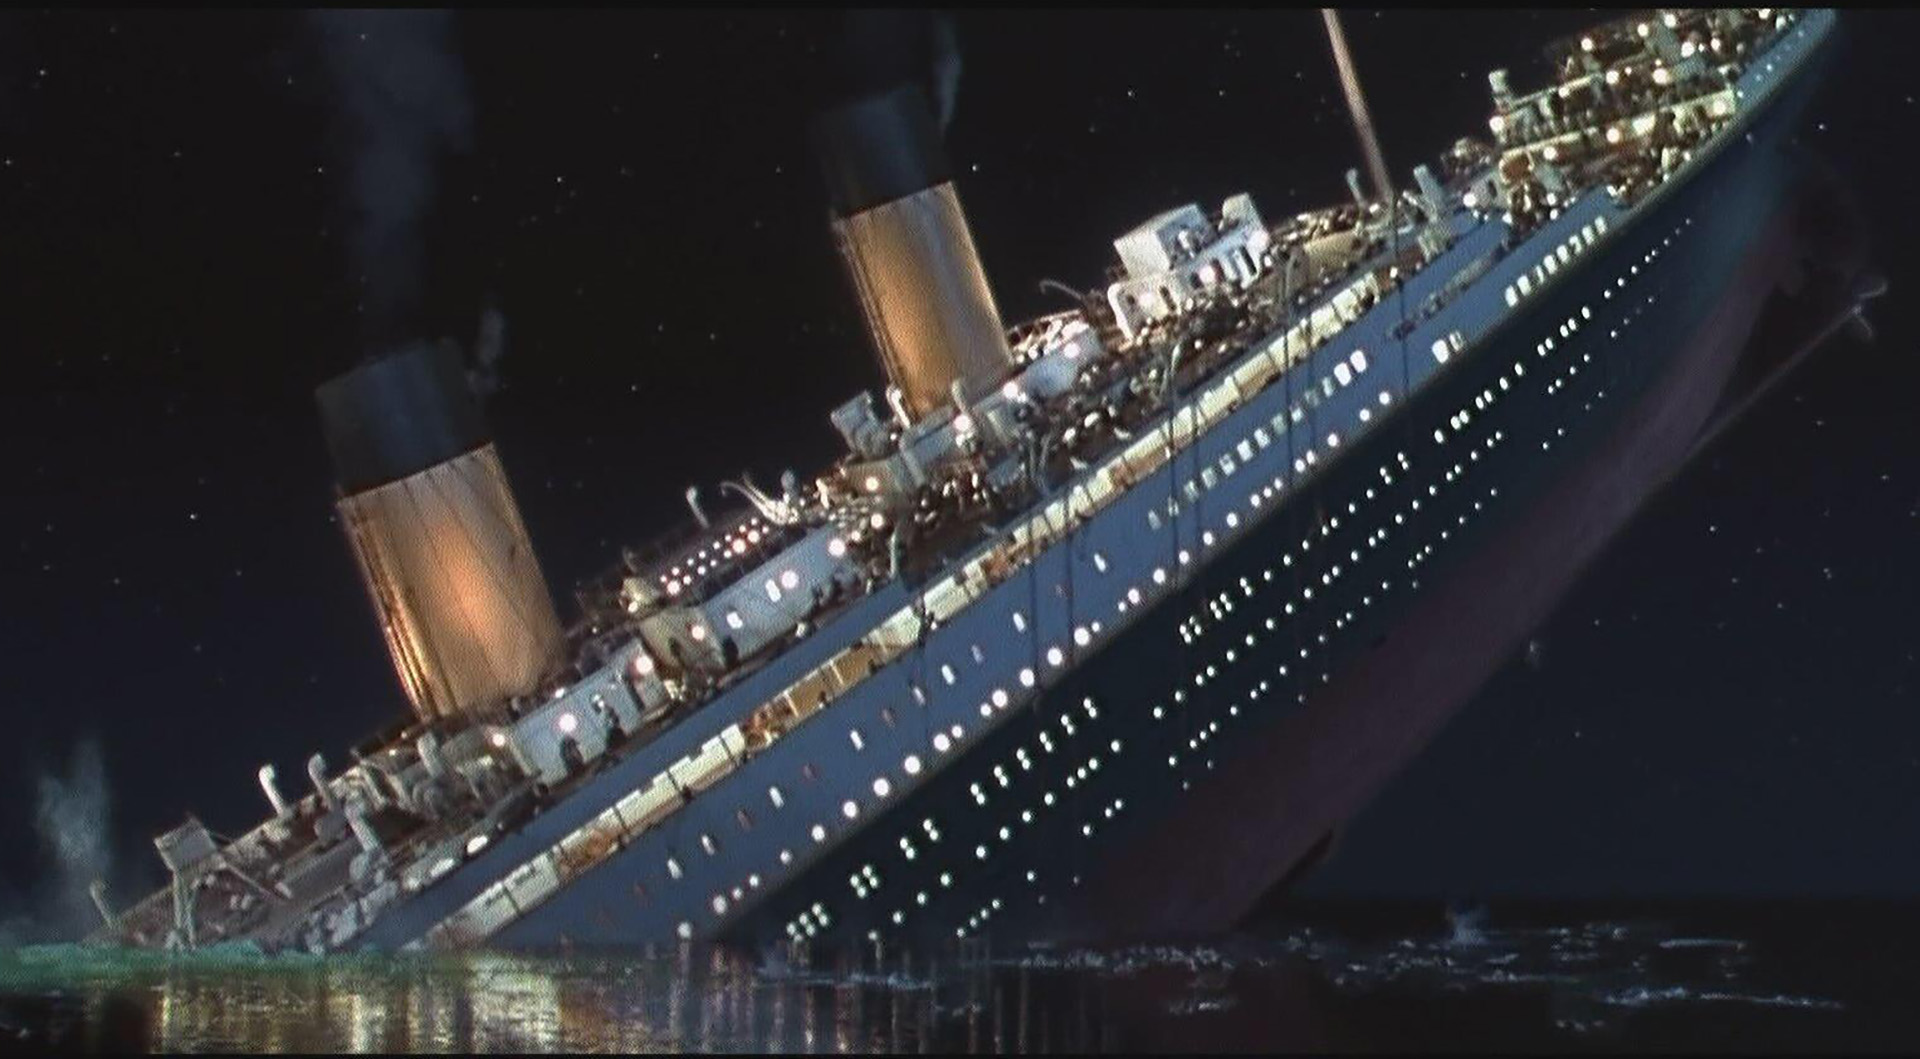 غرق شدن کشتی تایتانیک در فیلم Titanic